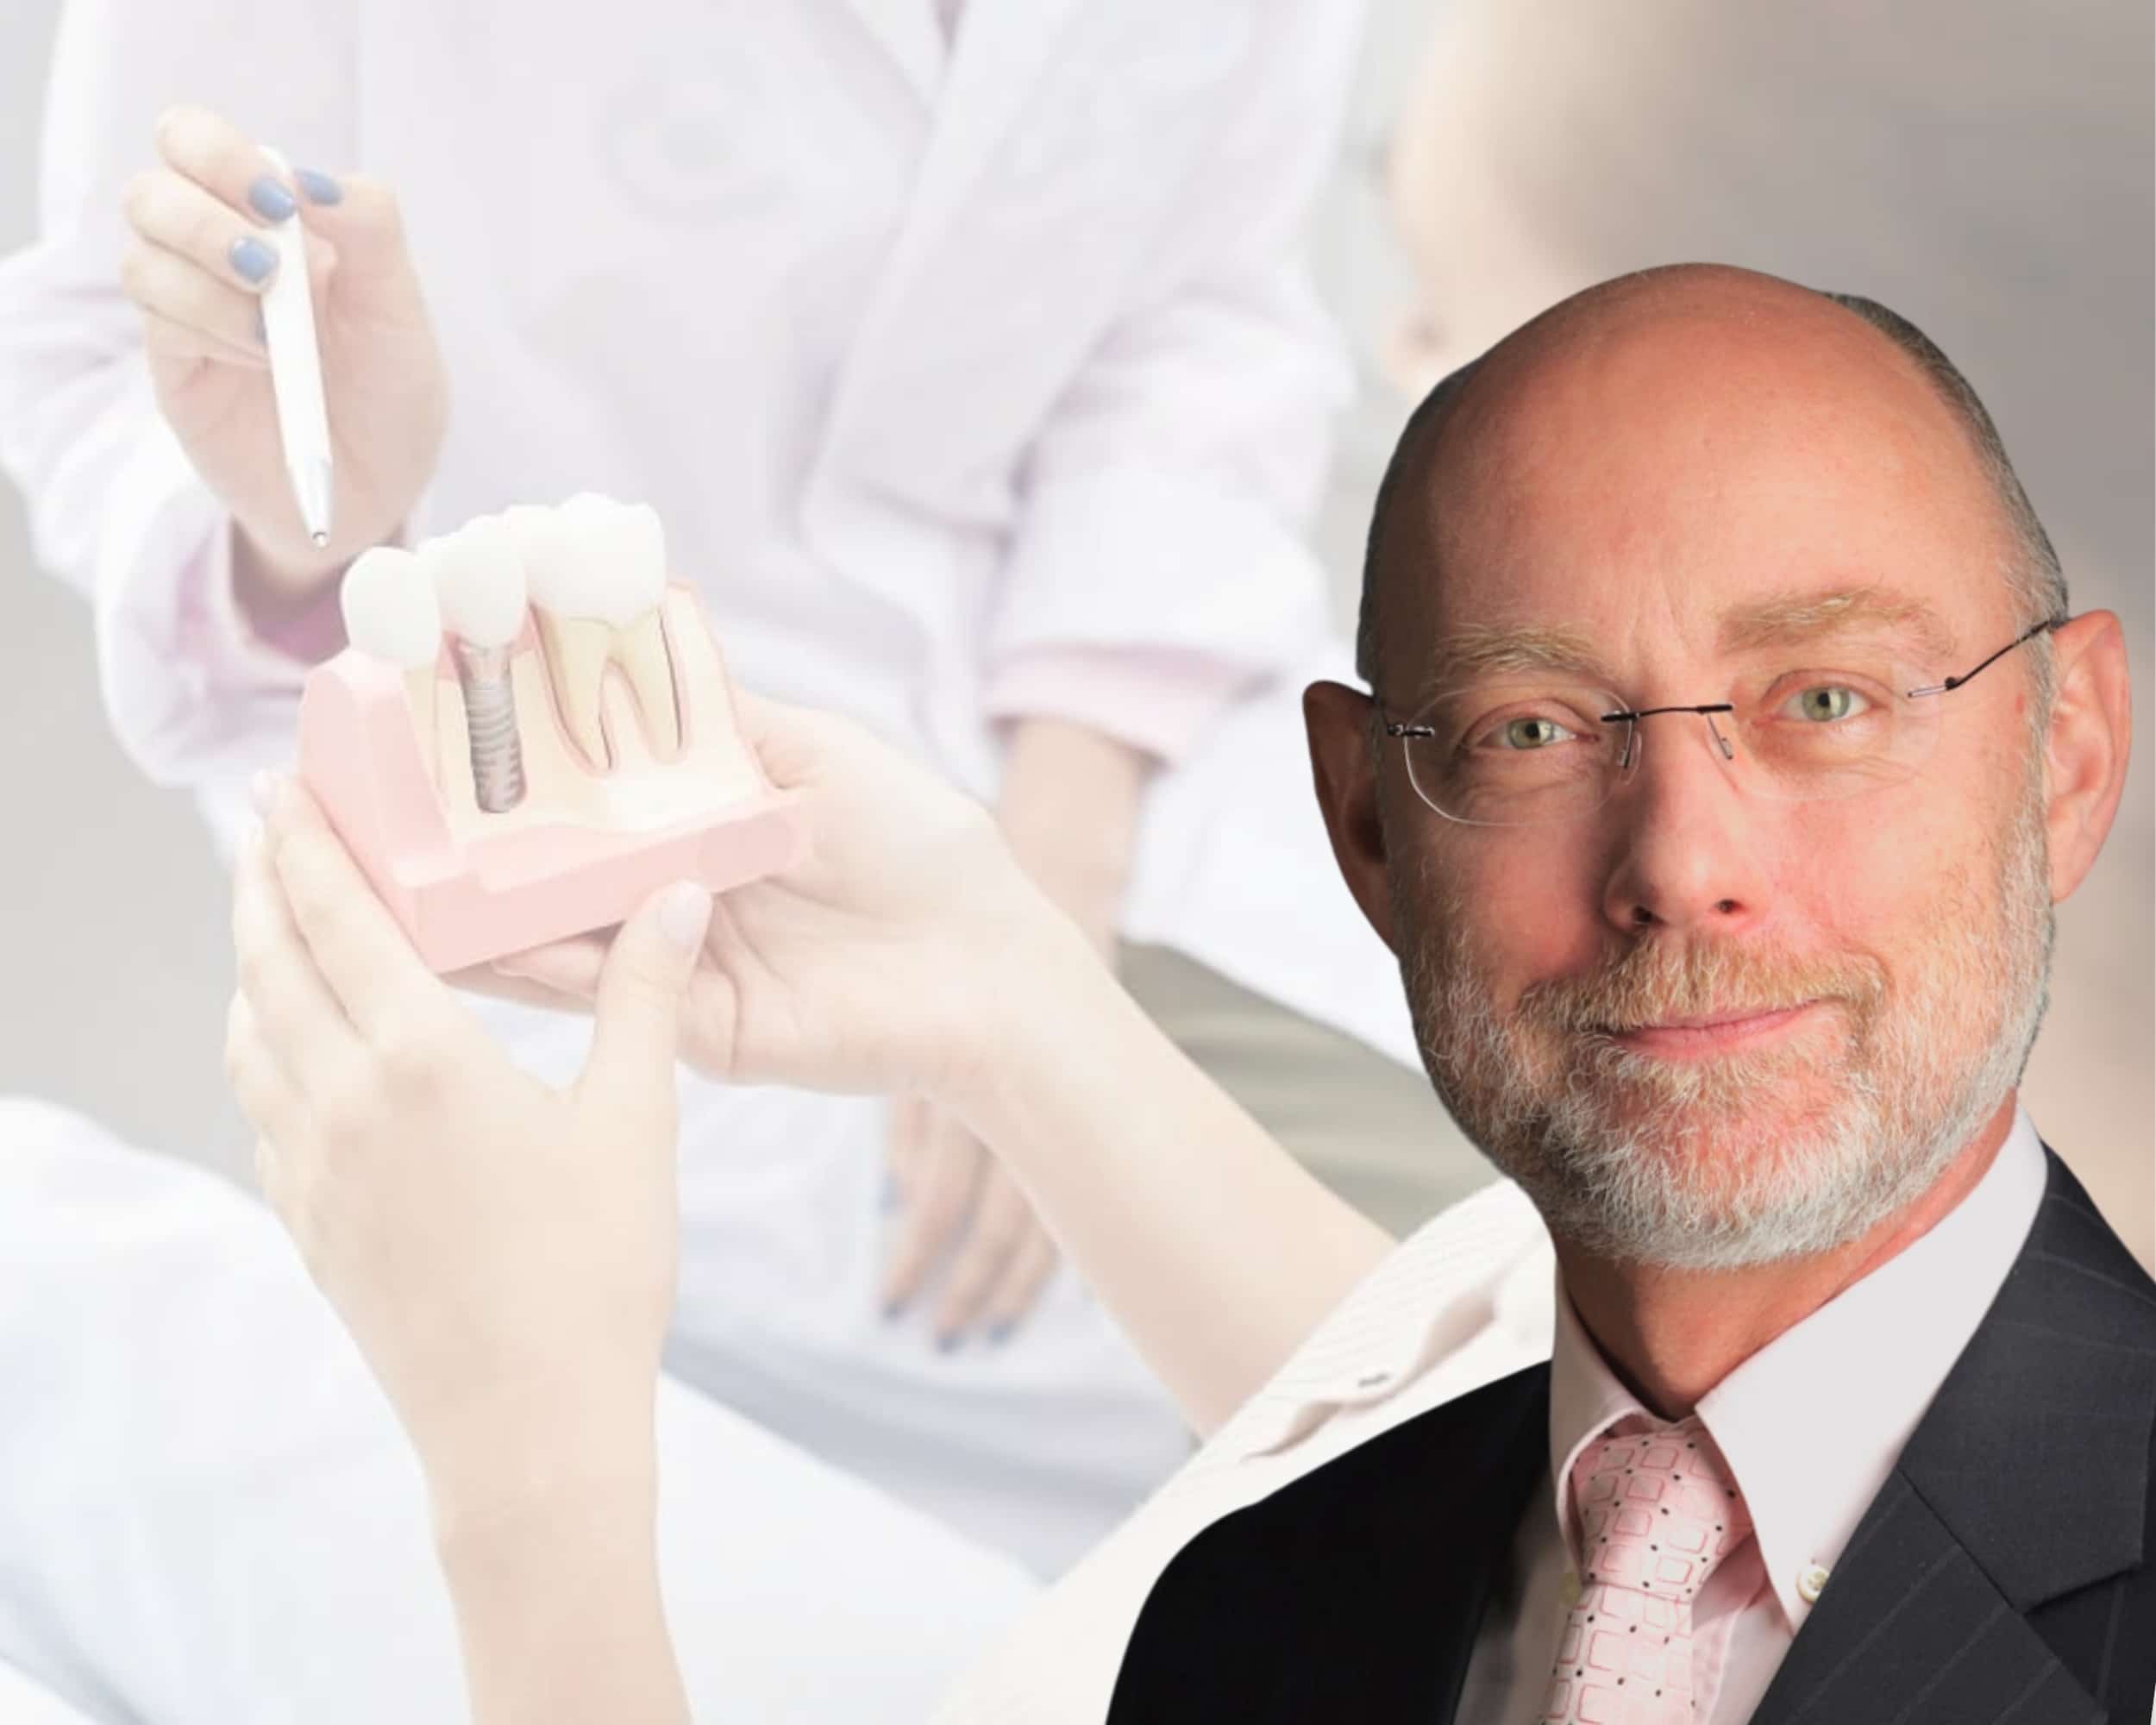 Prof. Dr. Winzen Zahnimplantate